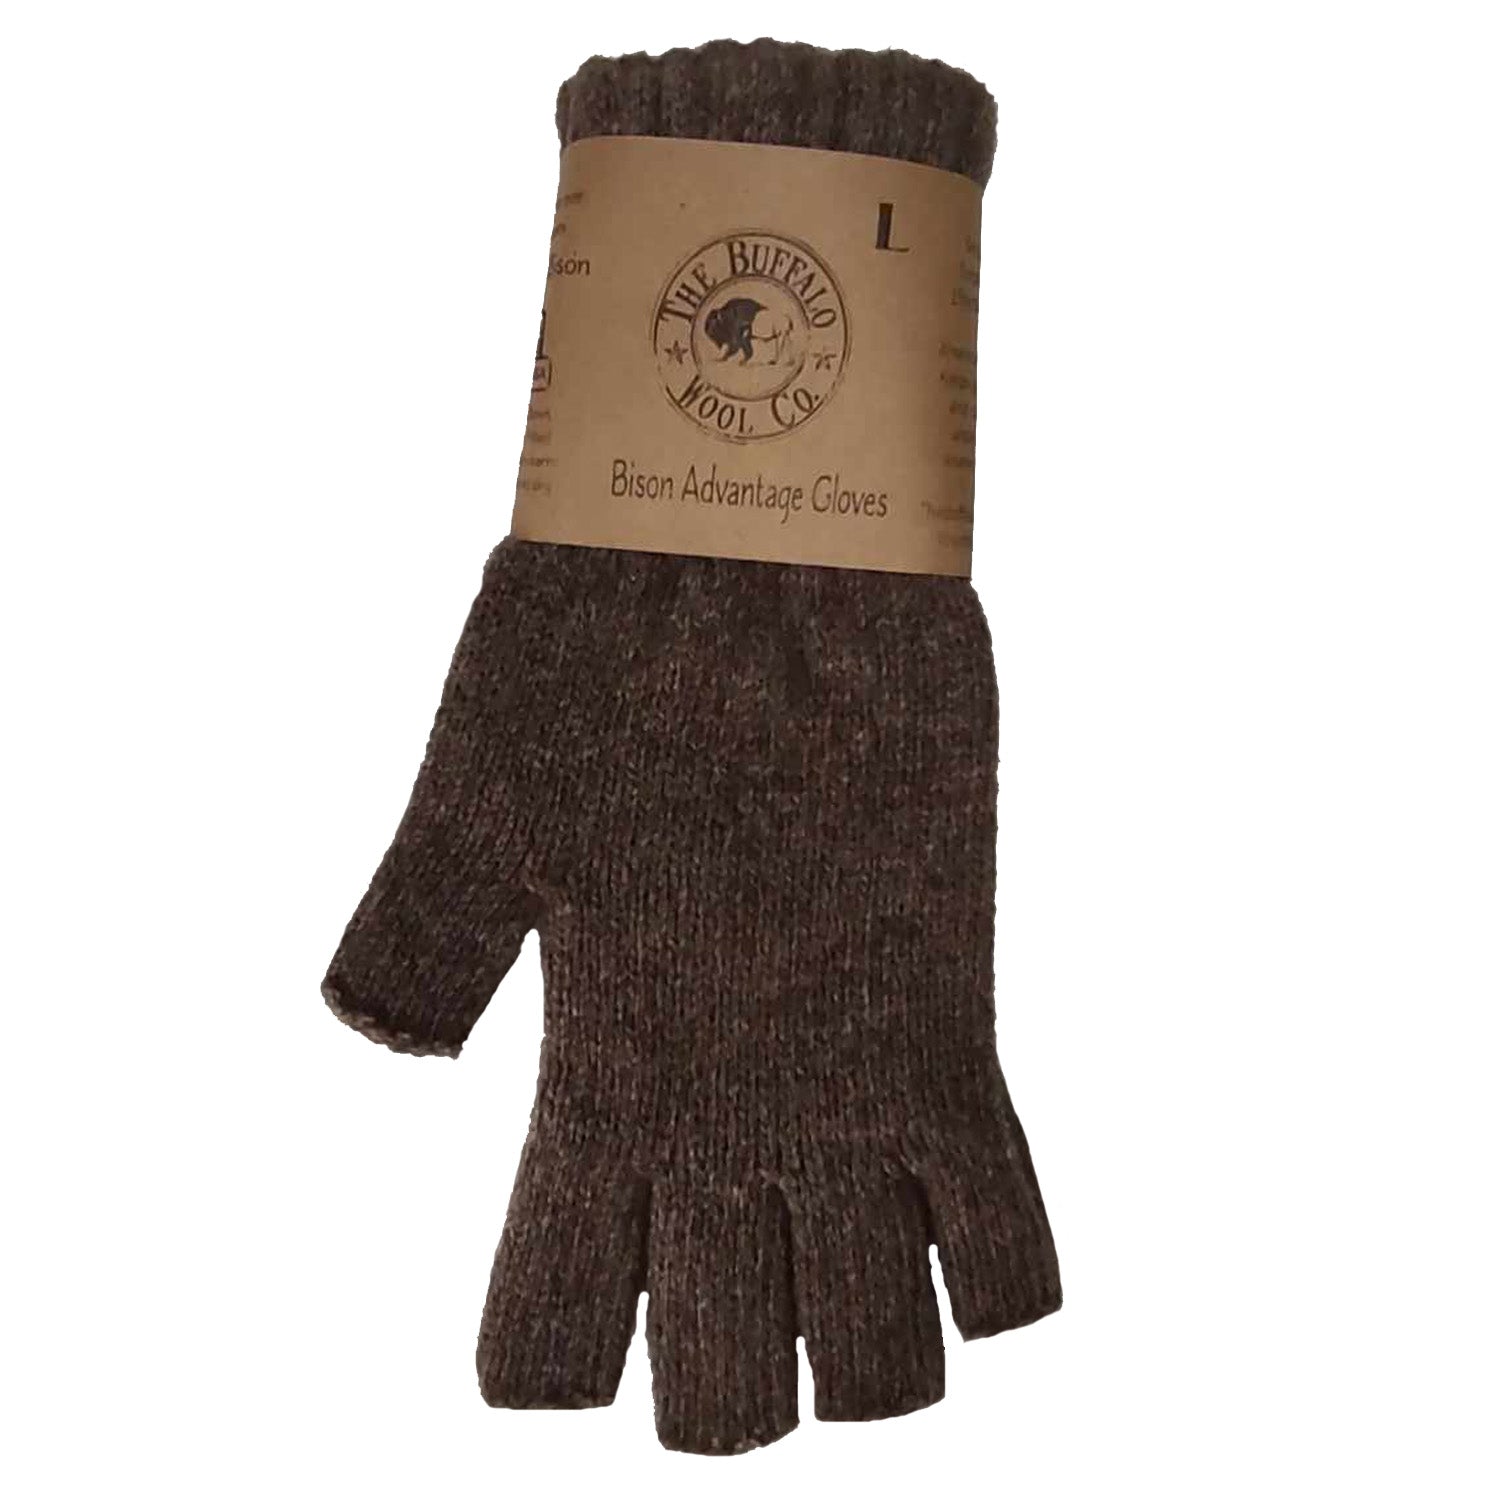 Advantage Gear - Bison/Merino Fingerless Gloves, Medium